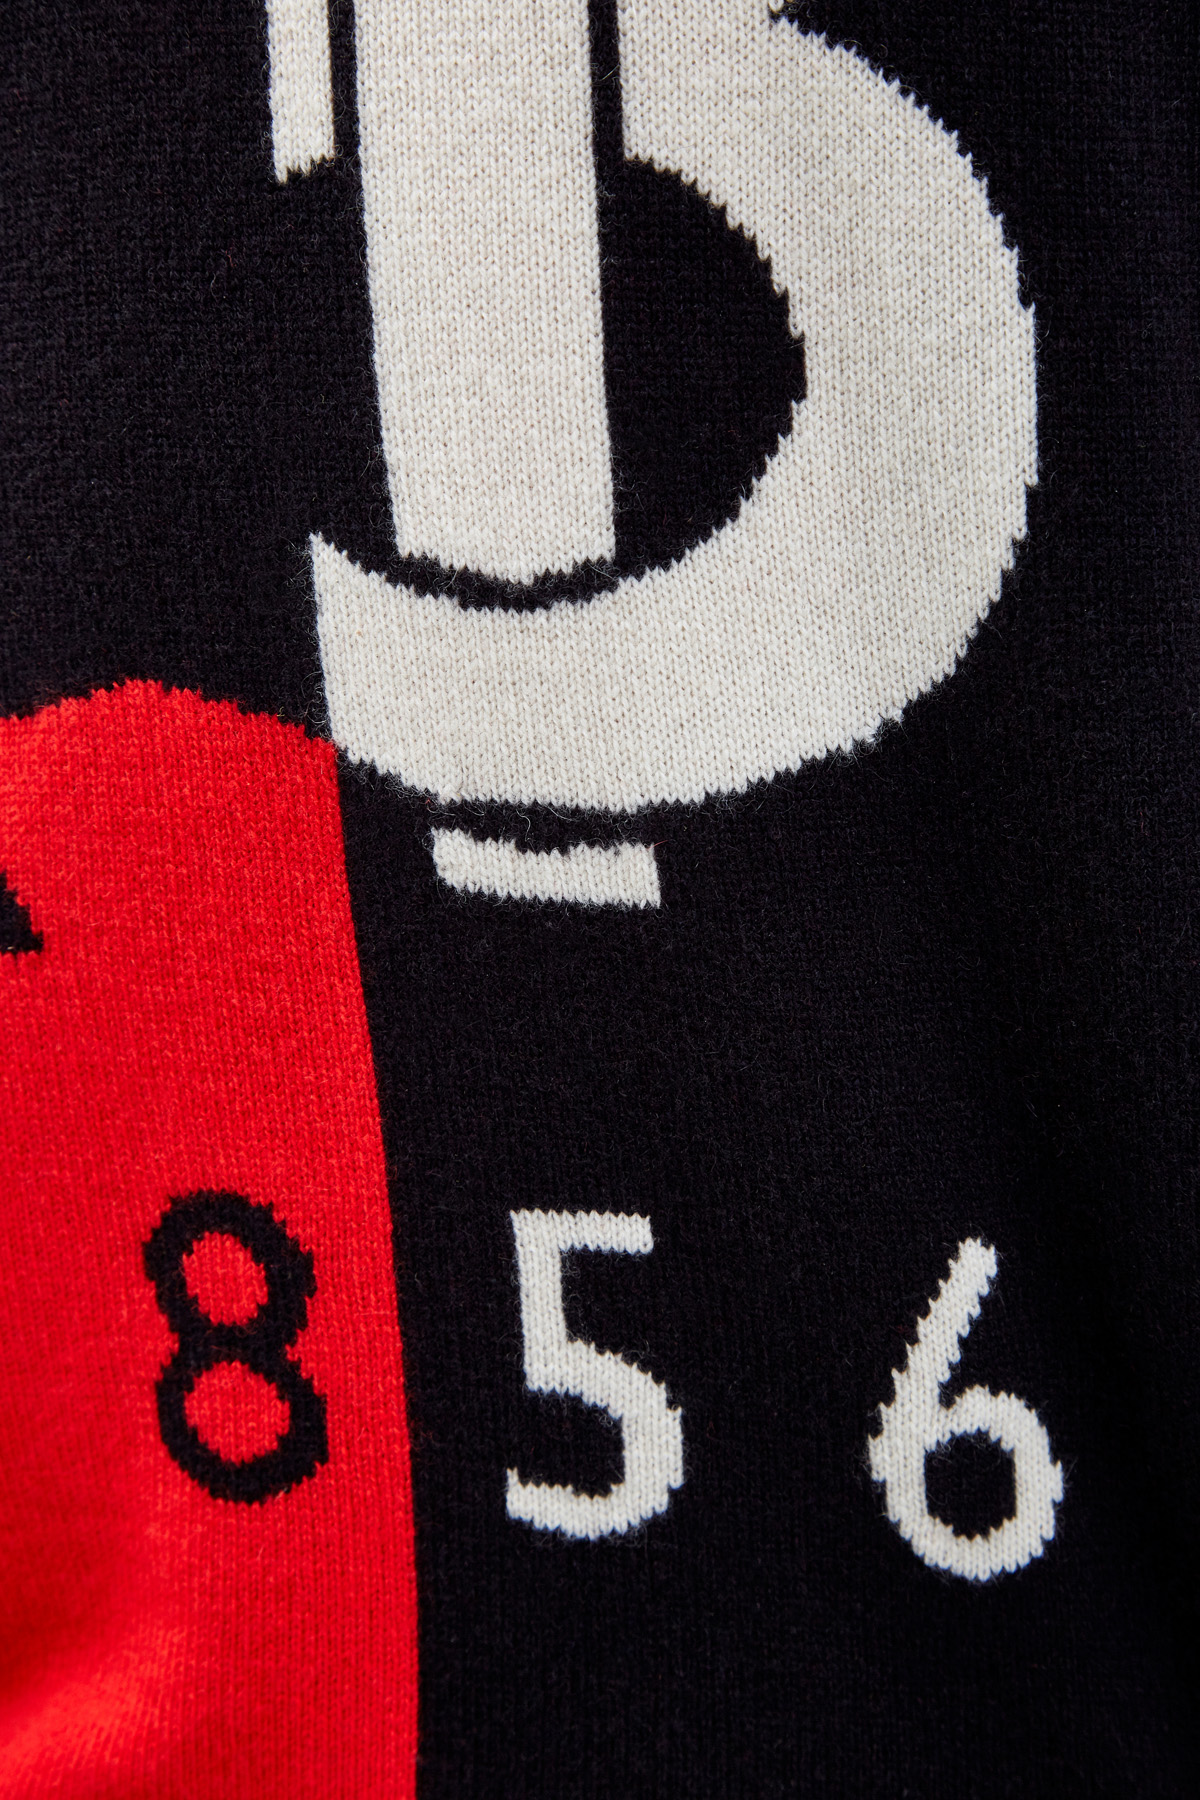 Кашемировый джемпер с макро-логотипом BURBERRY, цвет мульти, размер XL;M - фото 5